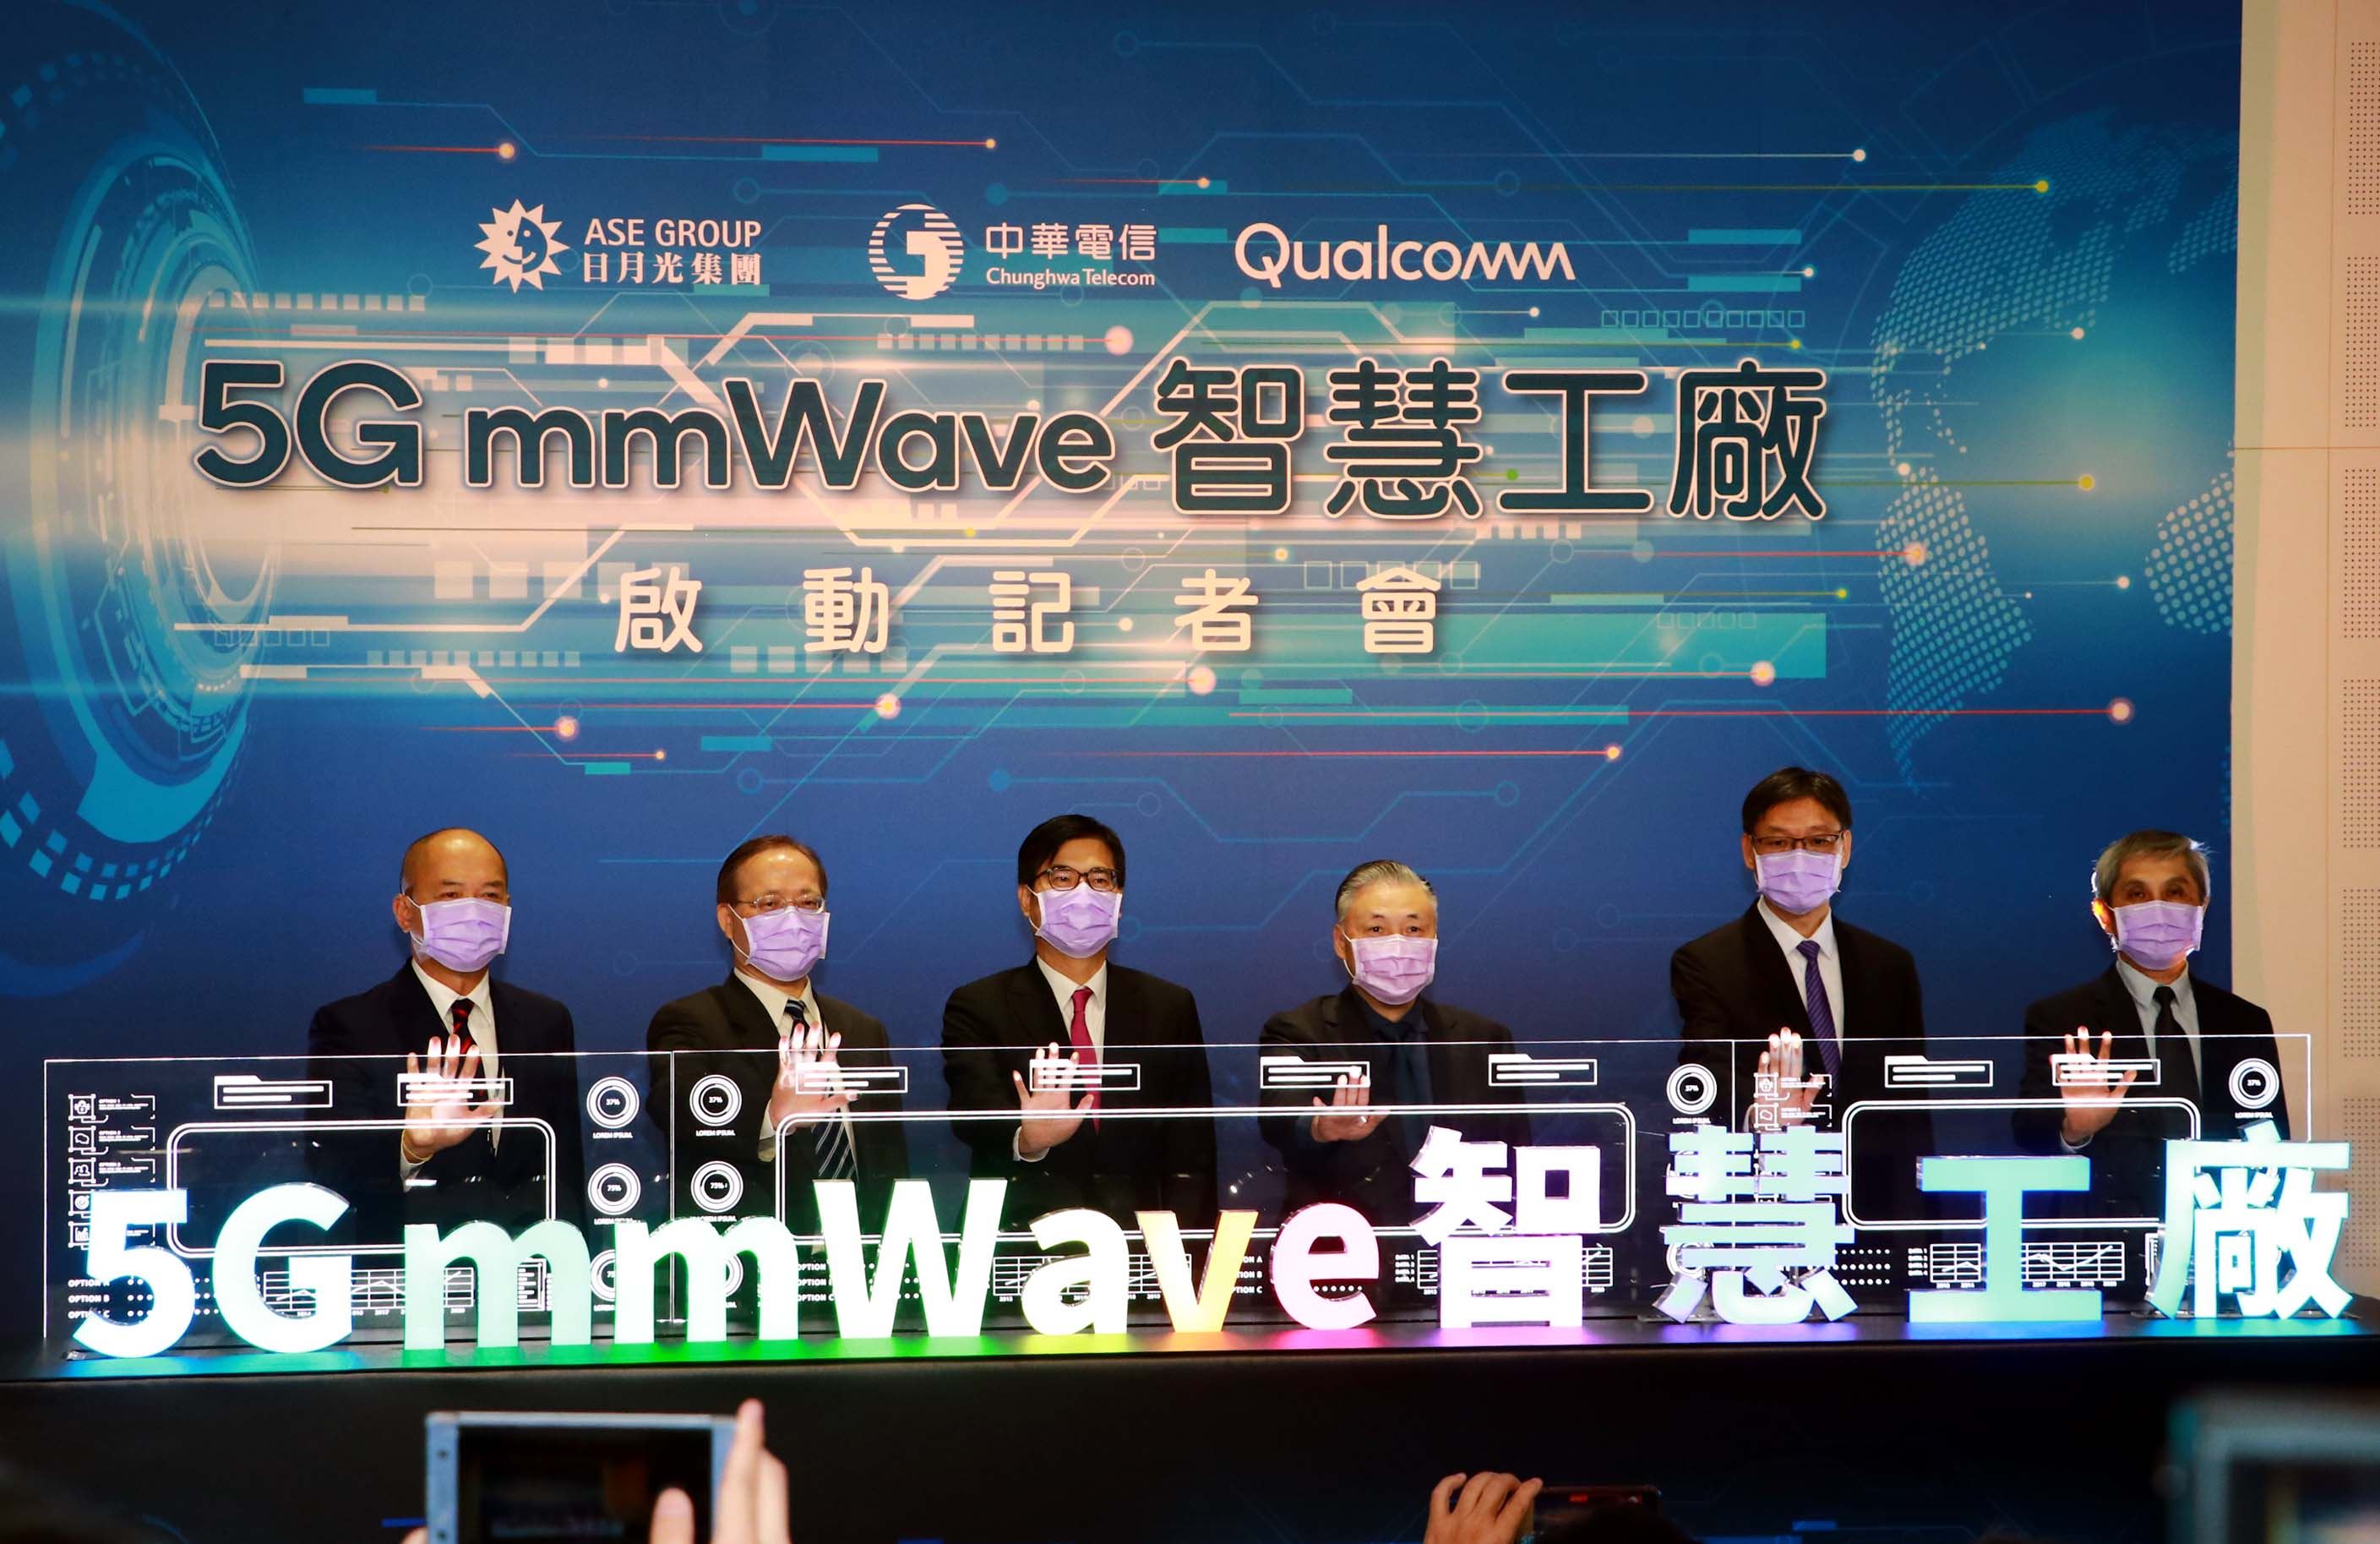 全球首座5G mmWave智慧工廠在高雄  陳其邁：國內外大廠齊聚、帶動產業升級